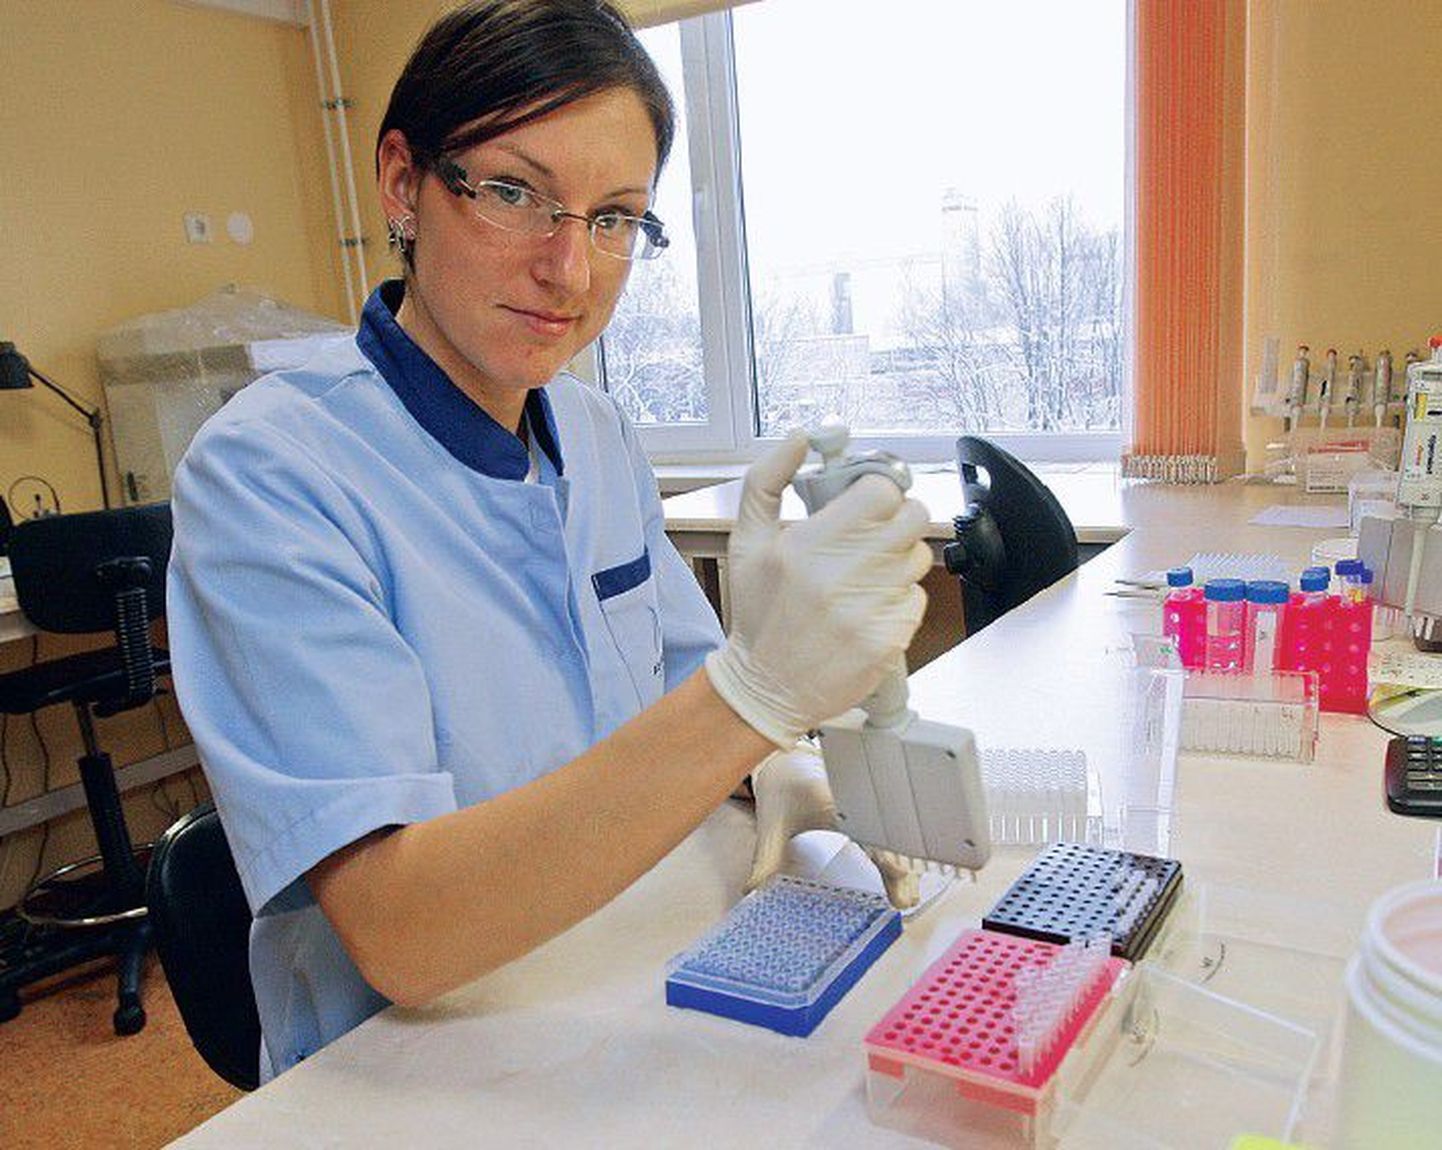 Лаборант биотехнологической фирмы Asper Biotech Кристи Пало занимается подготовкой ДНК для проведения генетического теста.